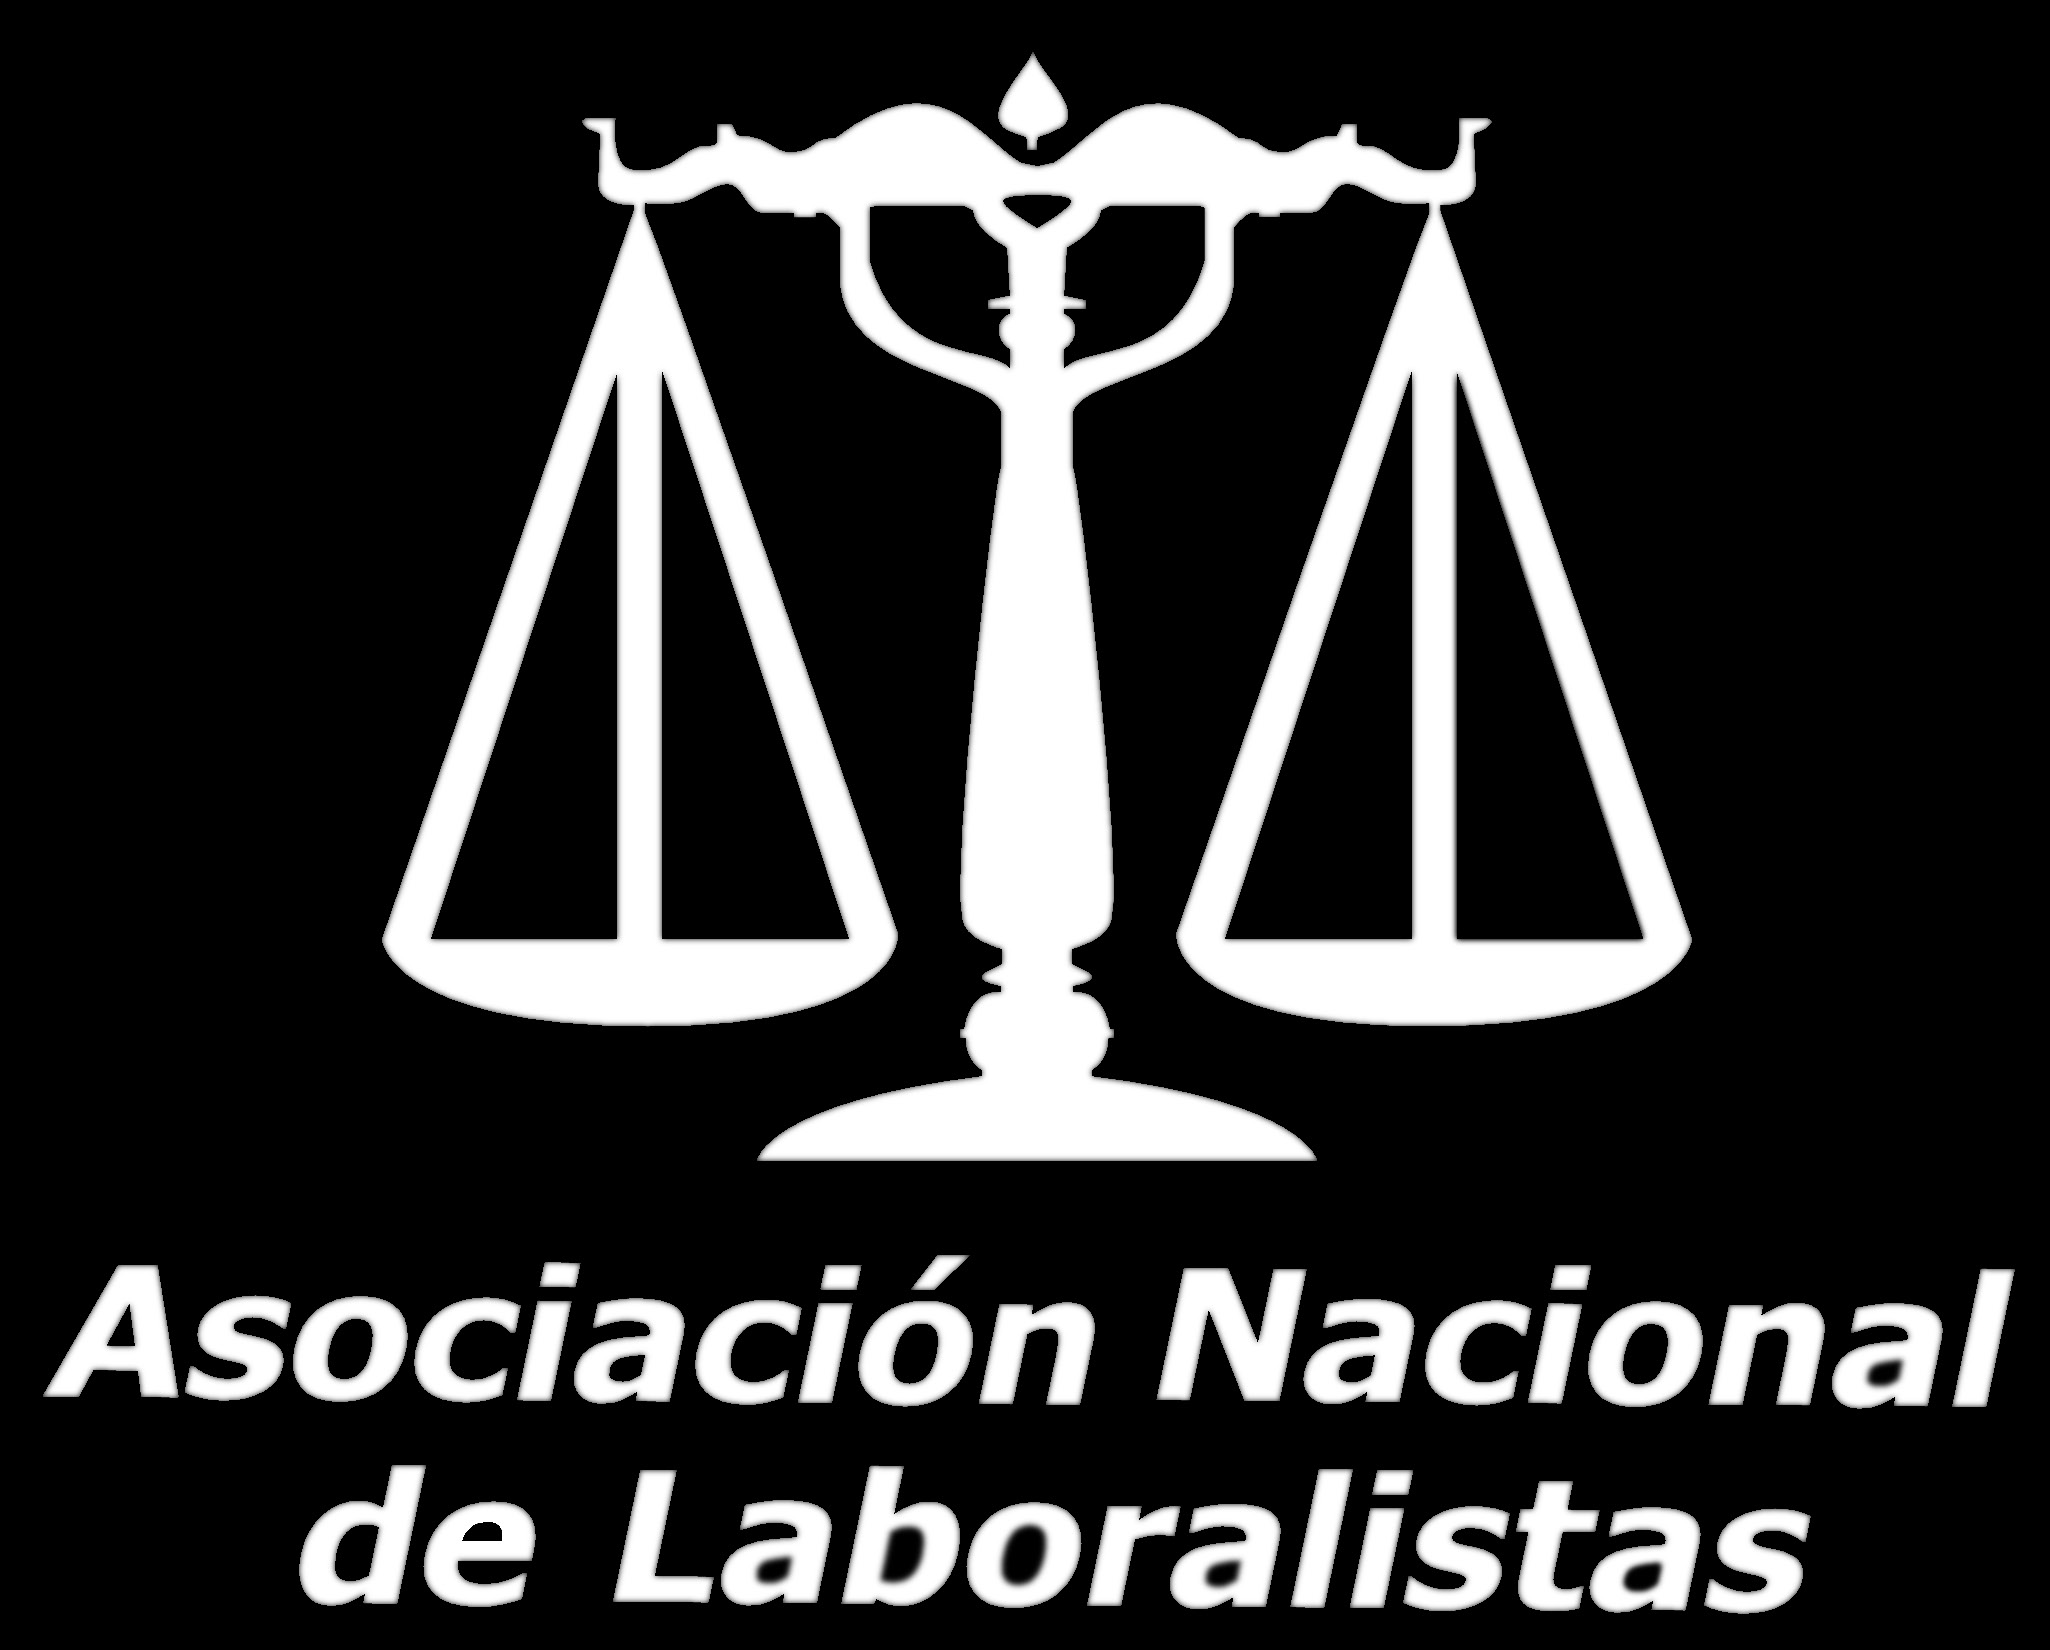 XIV FORO ARANZADI SOCIAL BARCELONA 2016 Fecha DEl Jueves, 25 de FEBRERO de 2016 al jueves, 24 de NOVIEMBRE de 2016 Lugar de